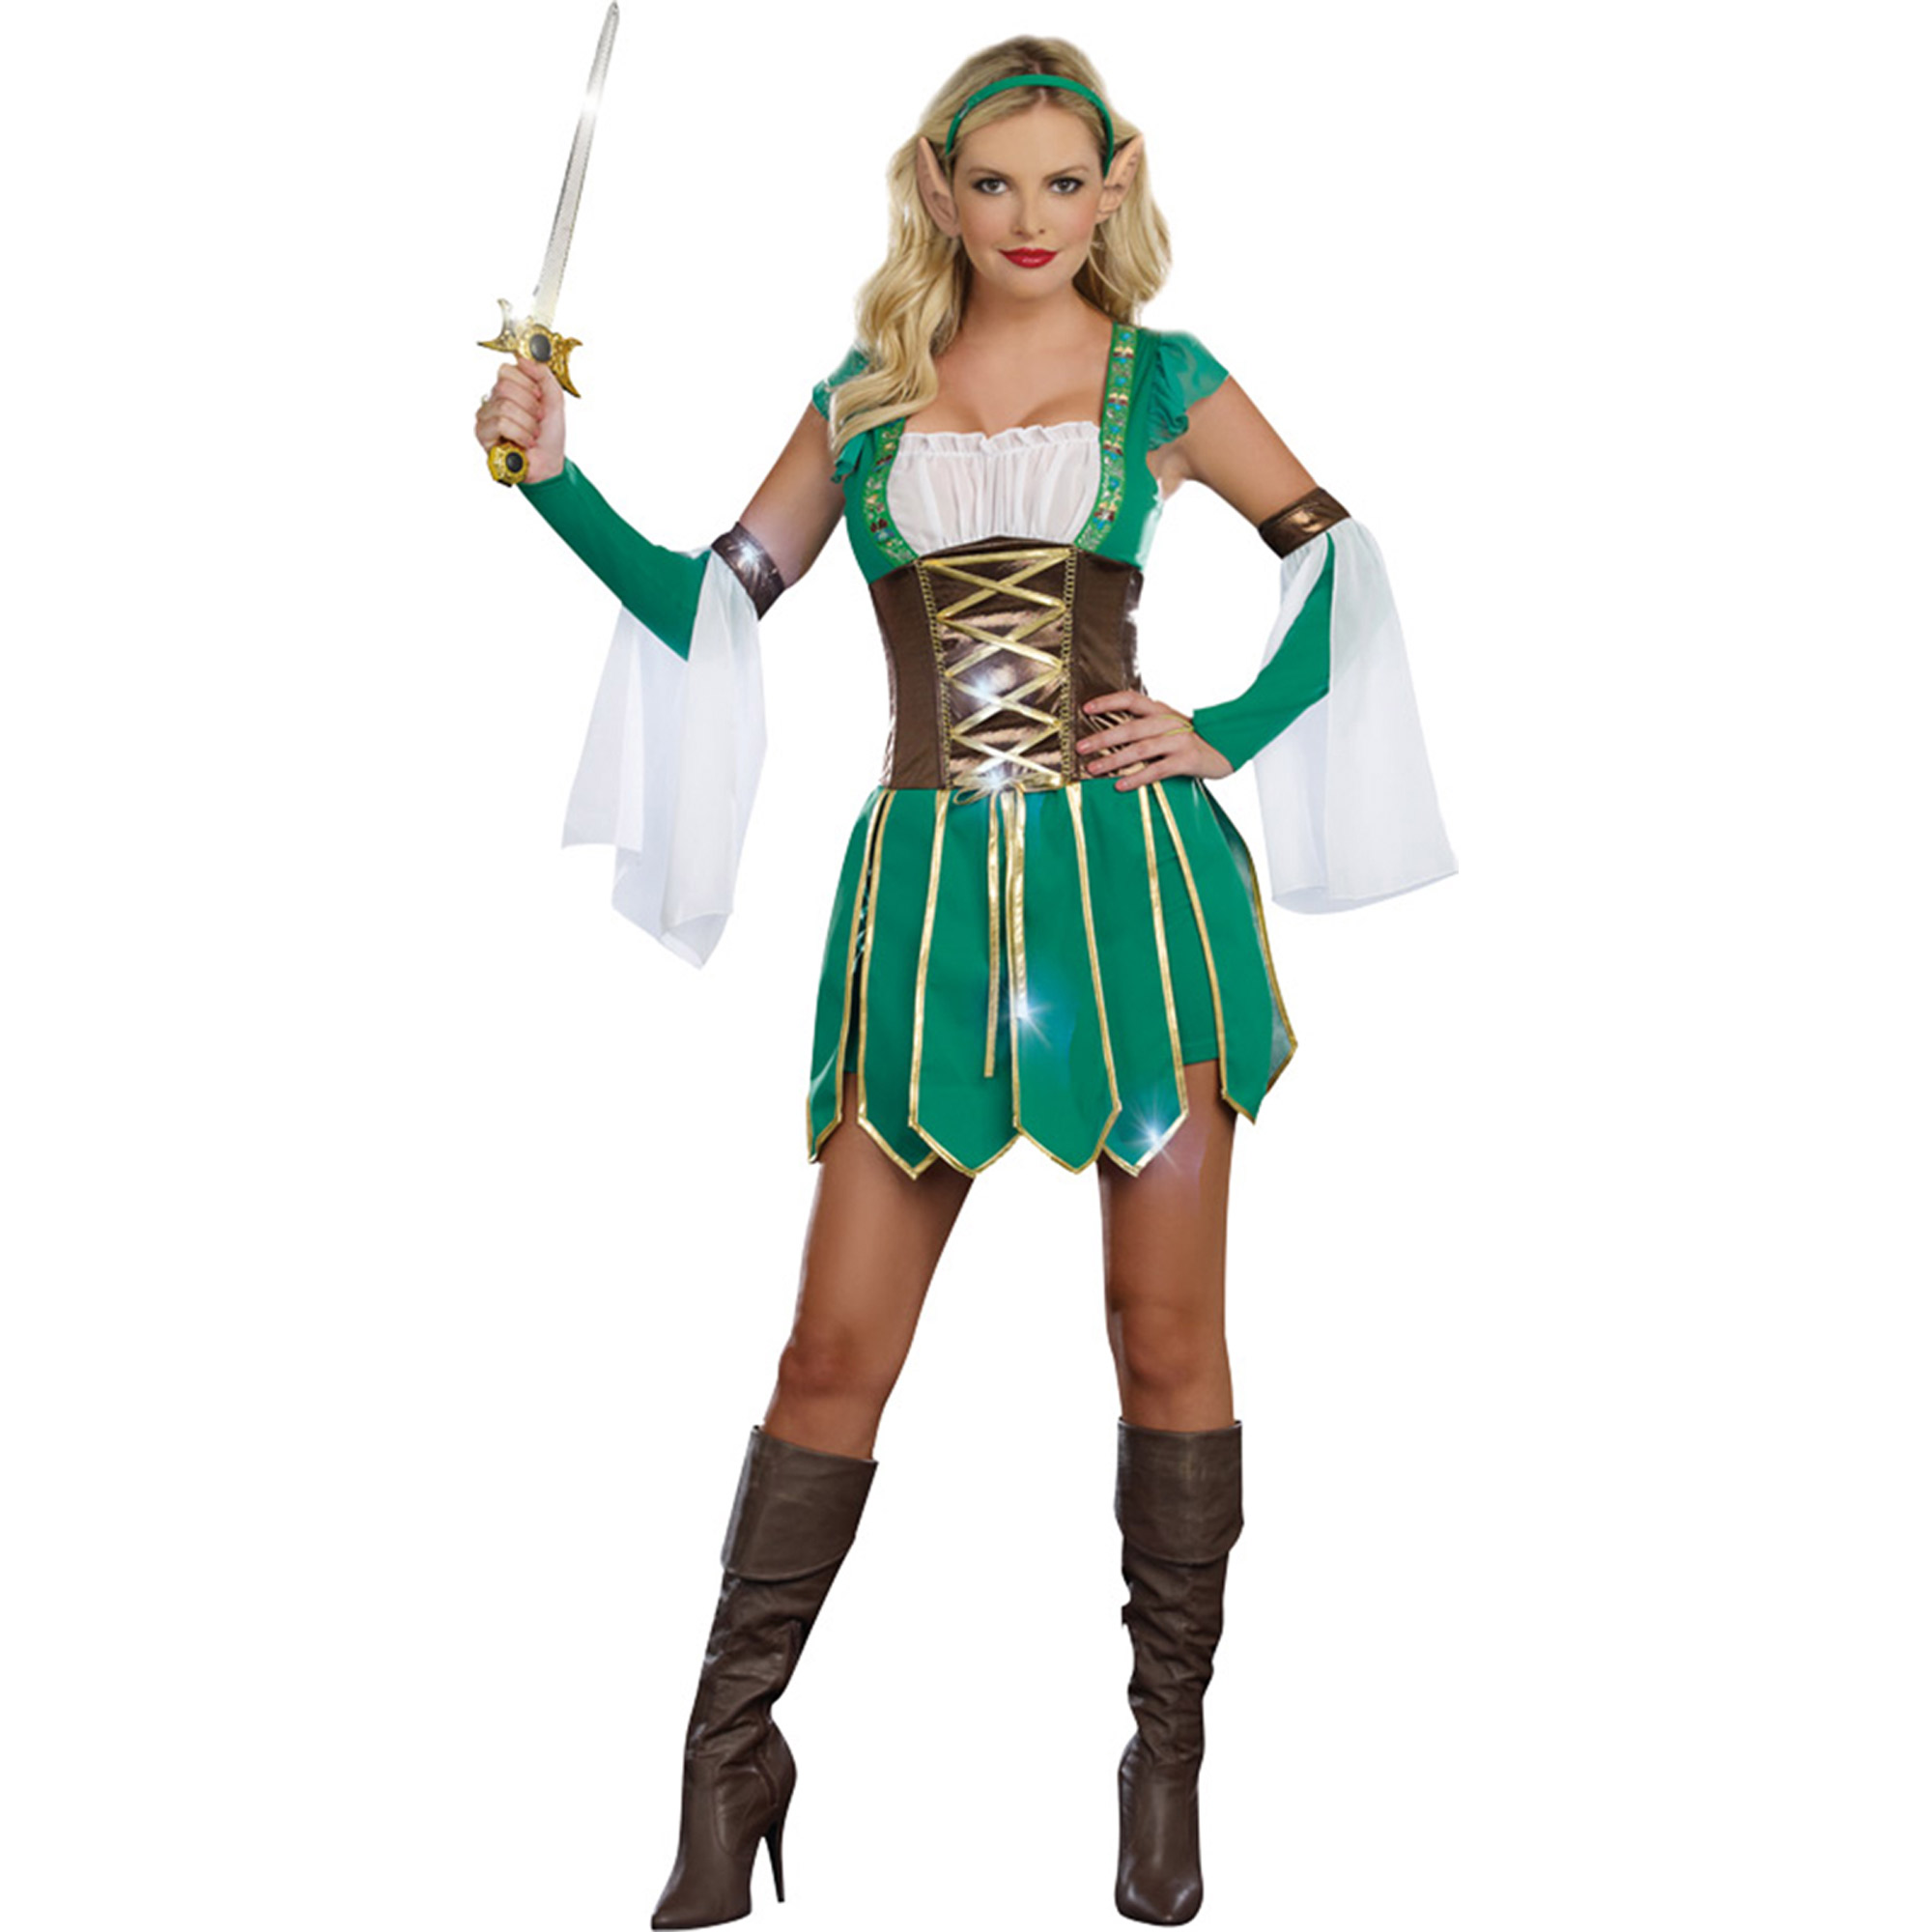 Keebler elf halloween costume